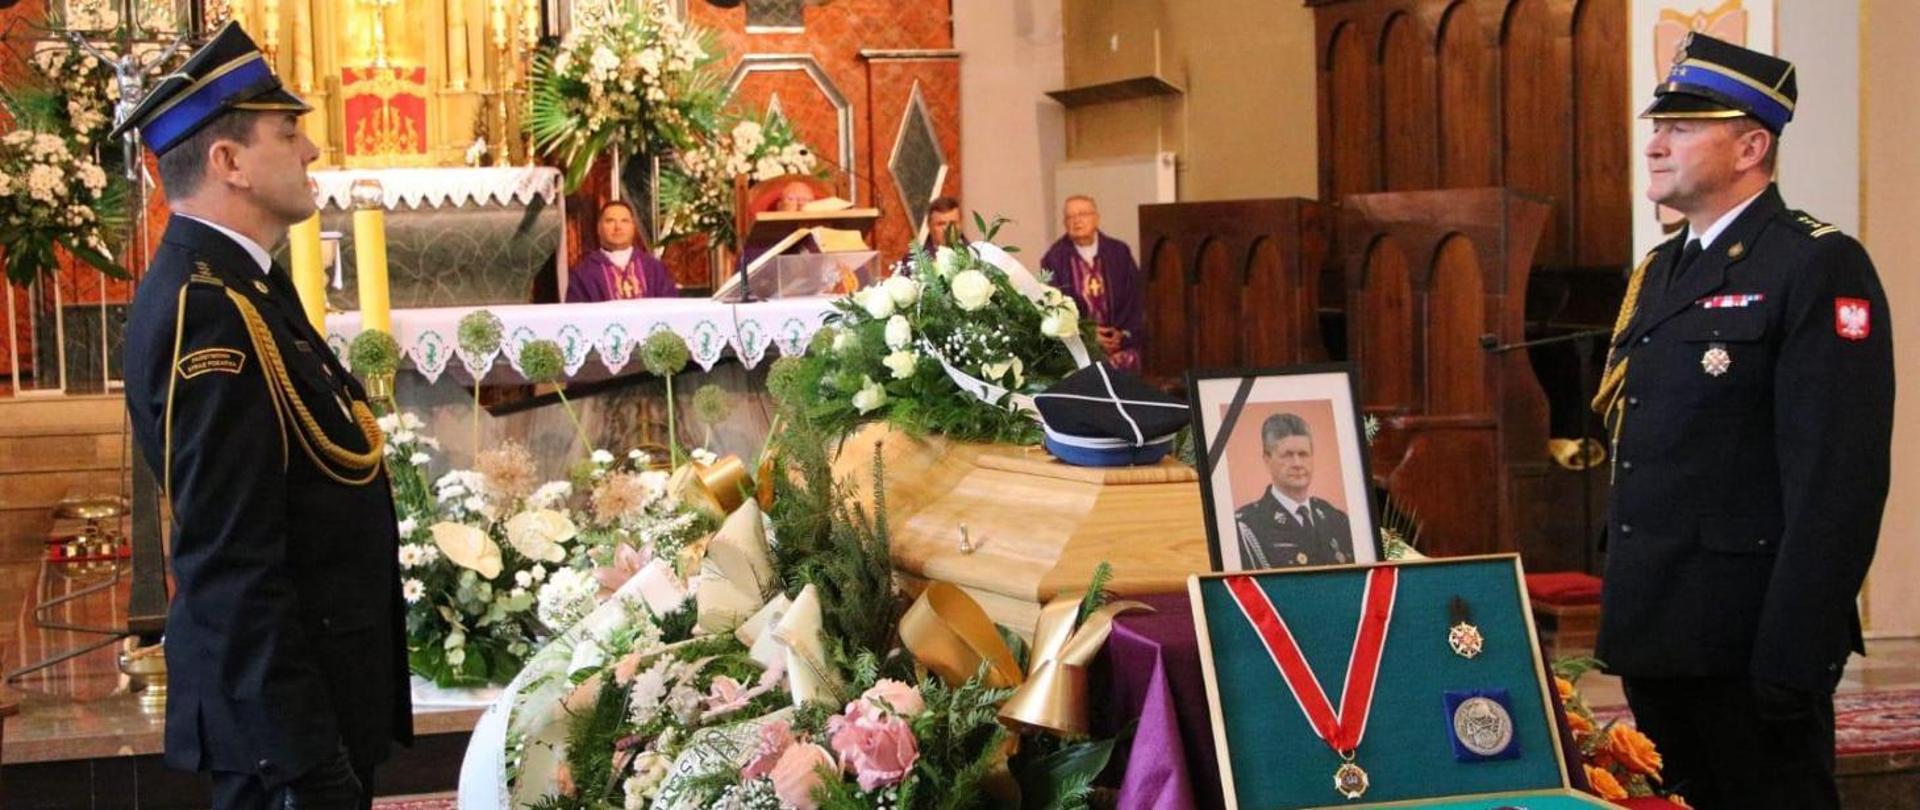 Kolorowa fotografia wykonana wewnątrz kościoła. Przedstawia asystę honorową przy trumnie przez oficerów podczas pogrzebu zasłużonego strażaka PSP i OSP. Przy trumnie znajduje się zdjęcie zmarłego strażaka i odznaczenia.